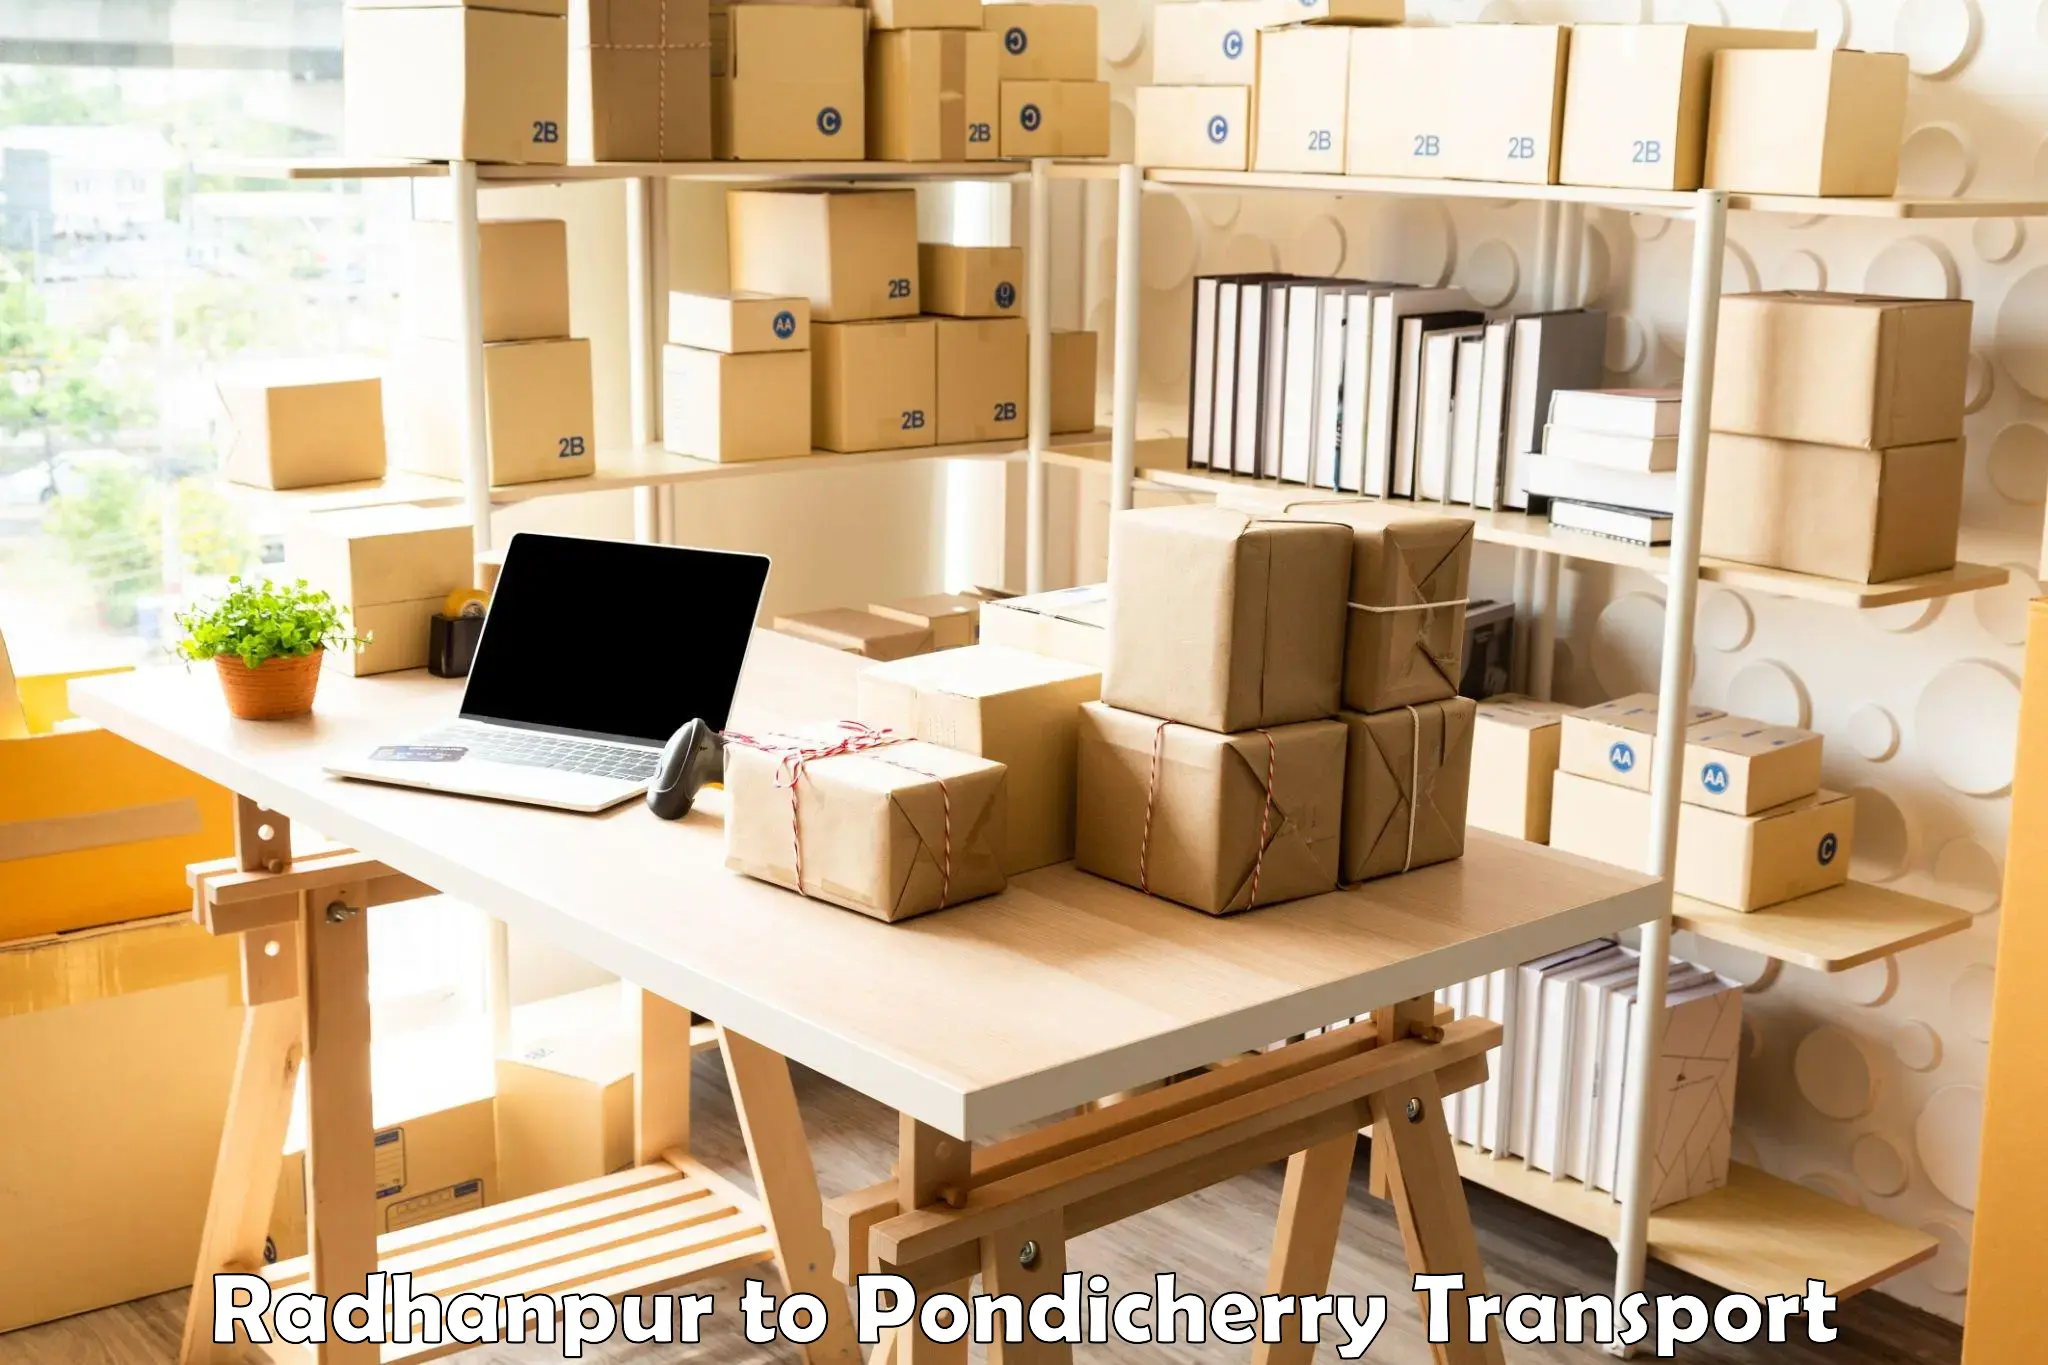 Cargo transport services Radhanpur to Pondicherry